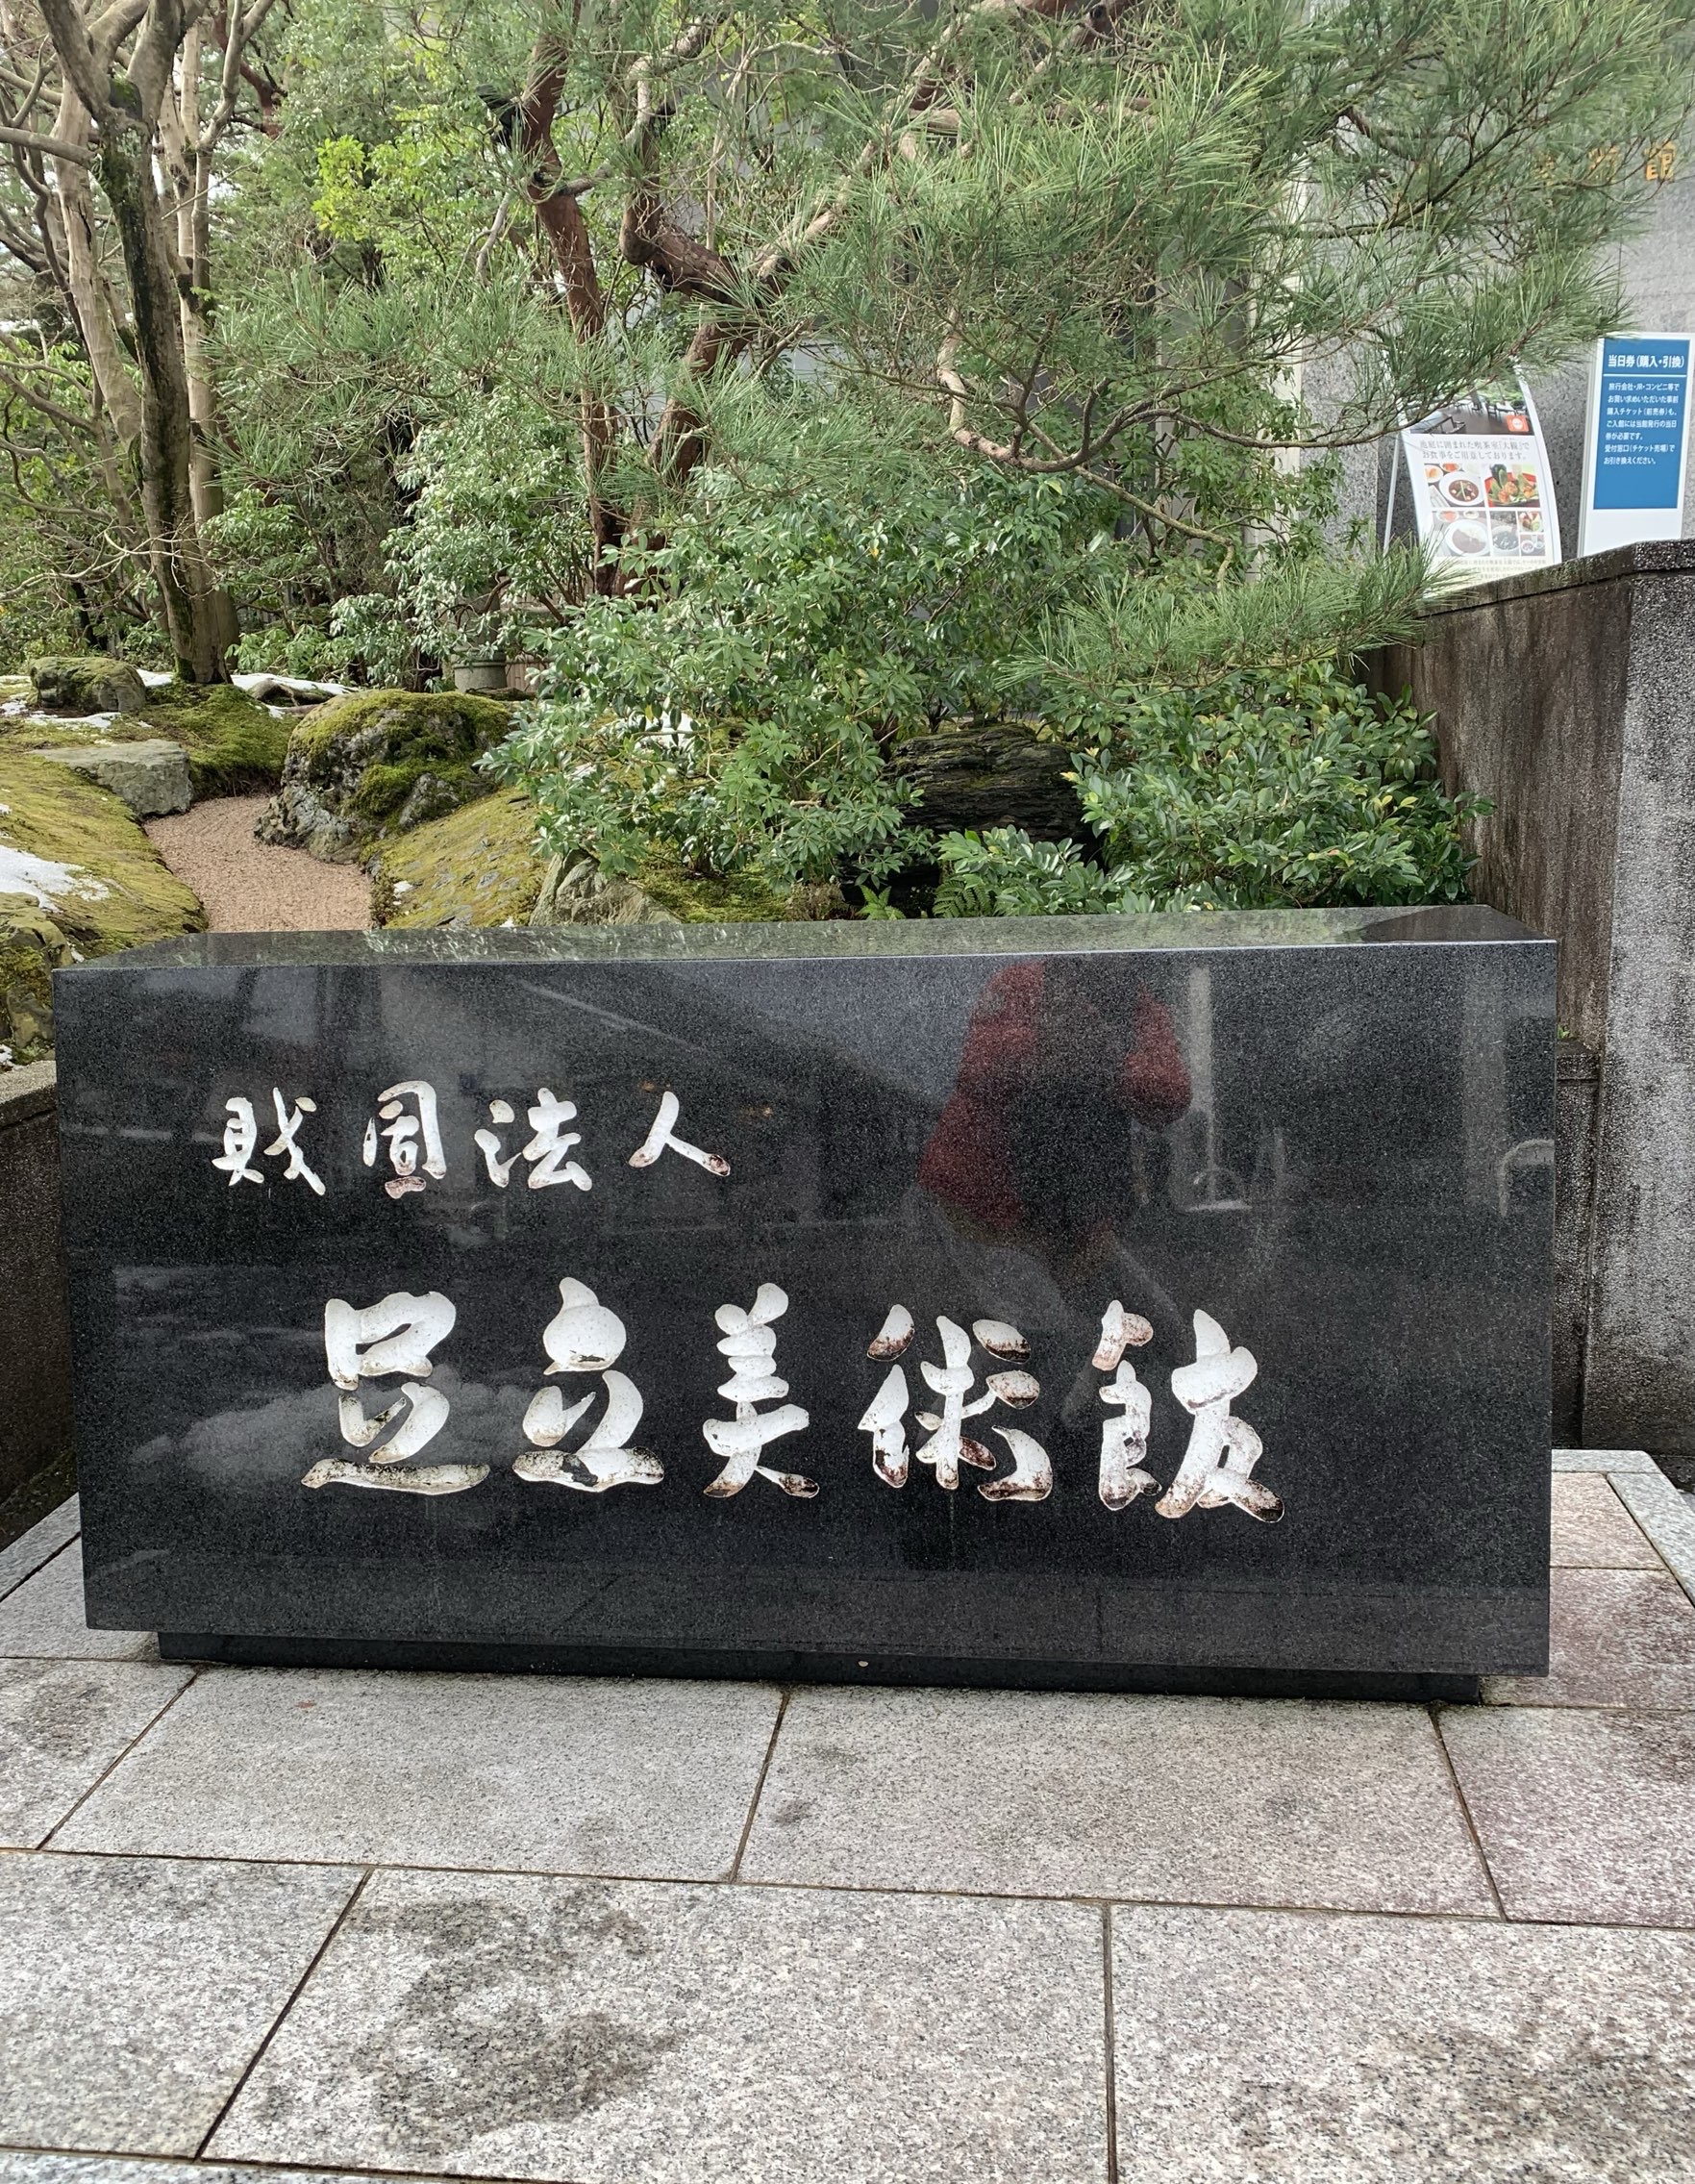 日本庭园榜首—足立美术馆